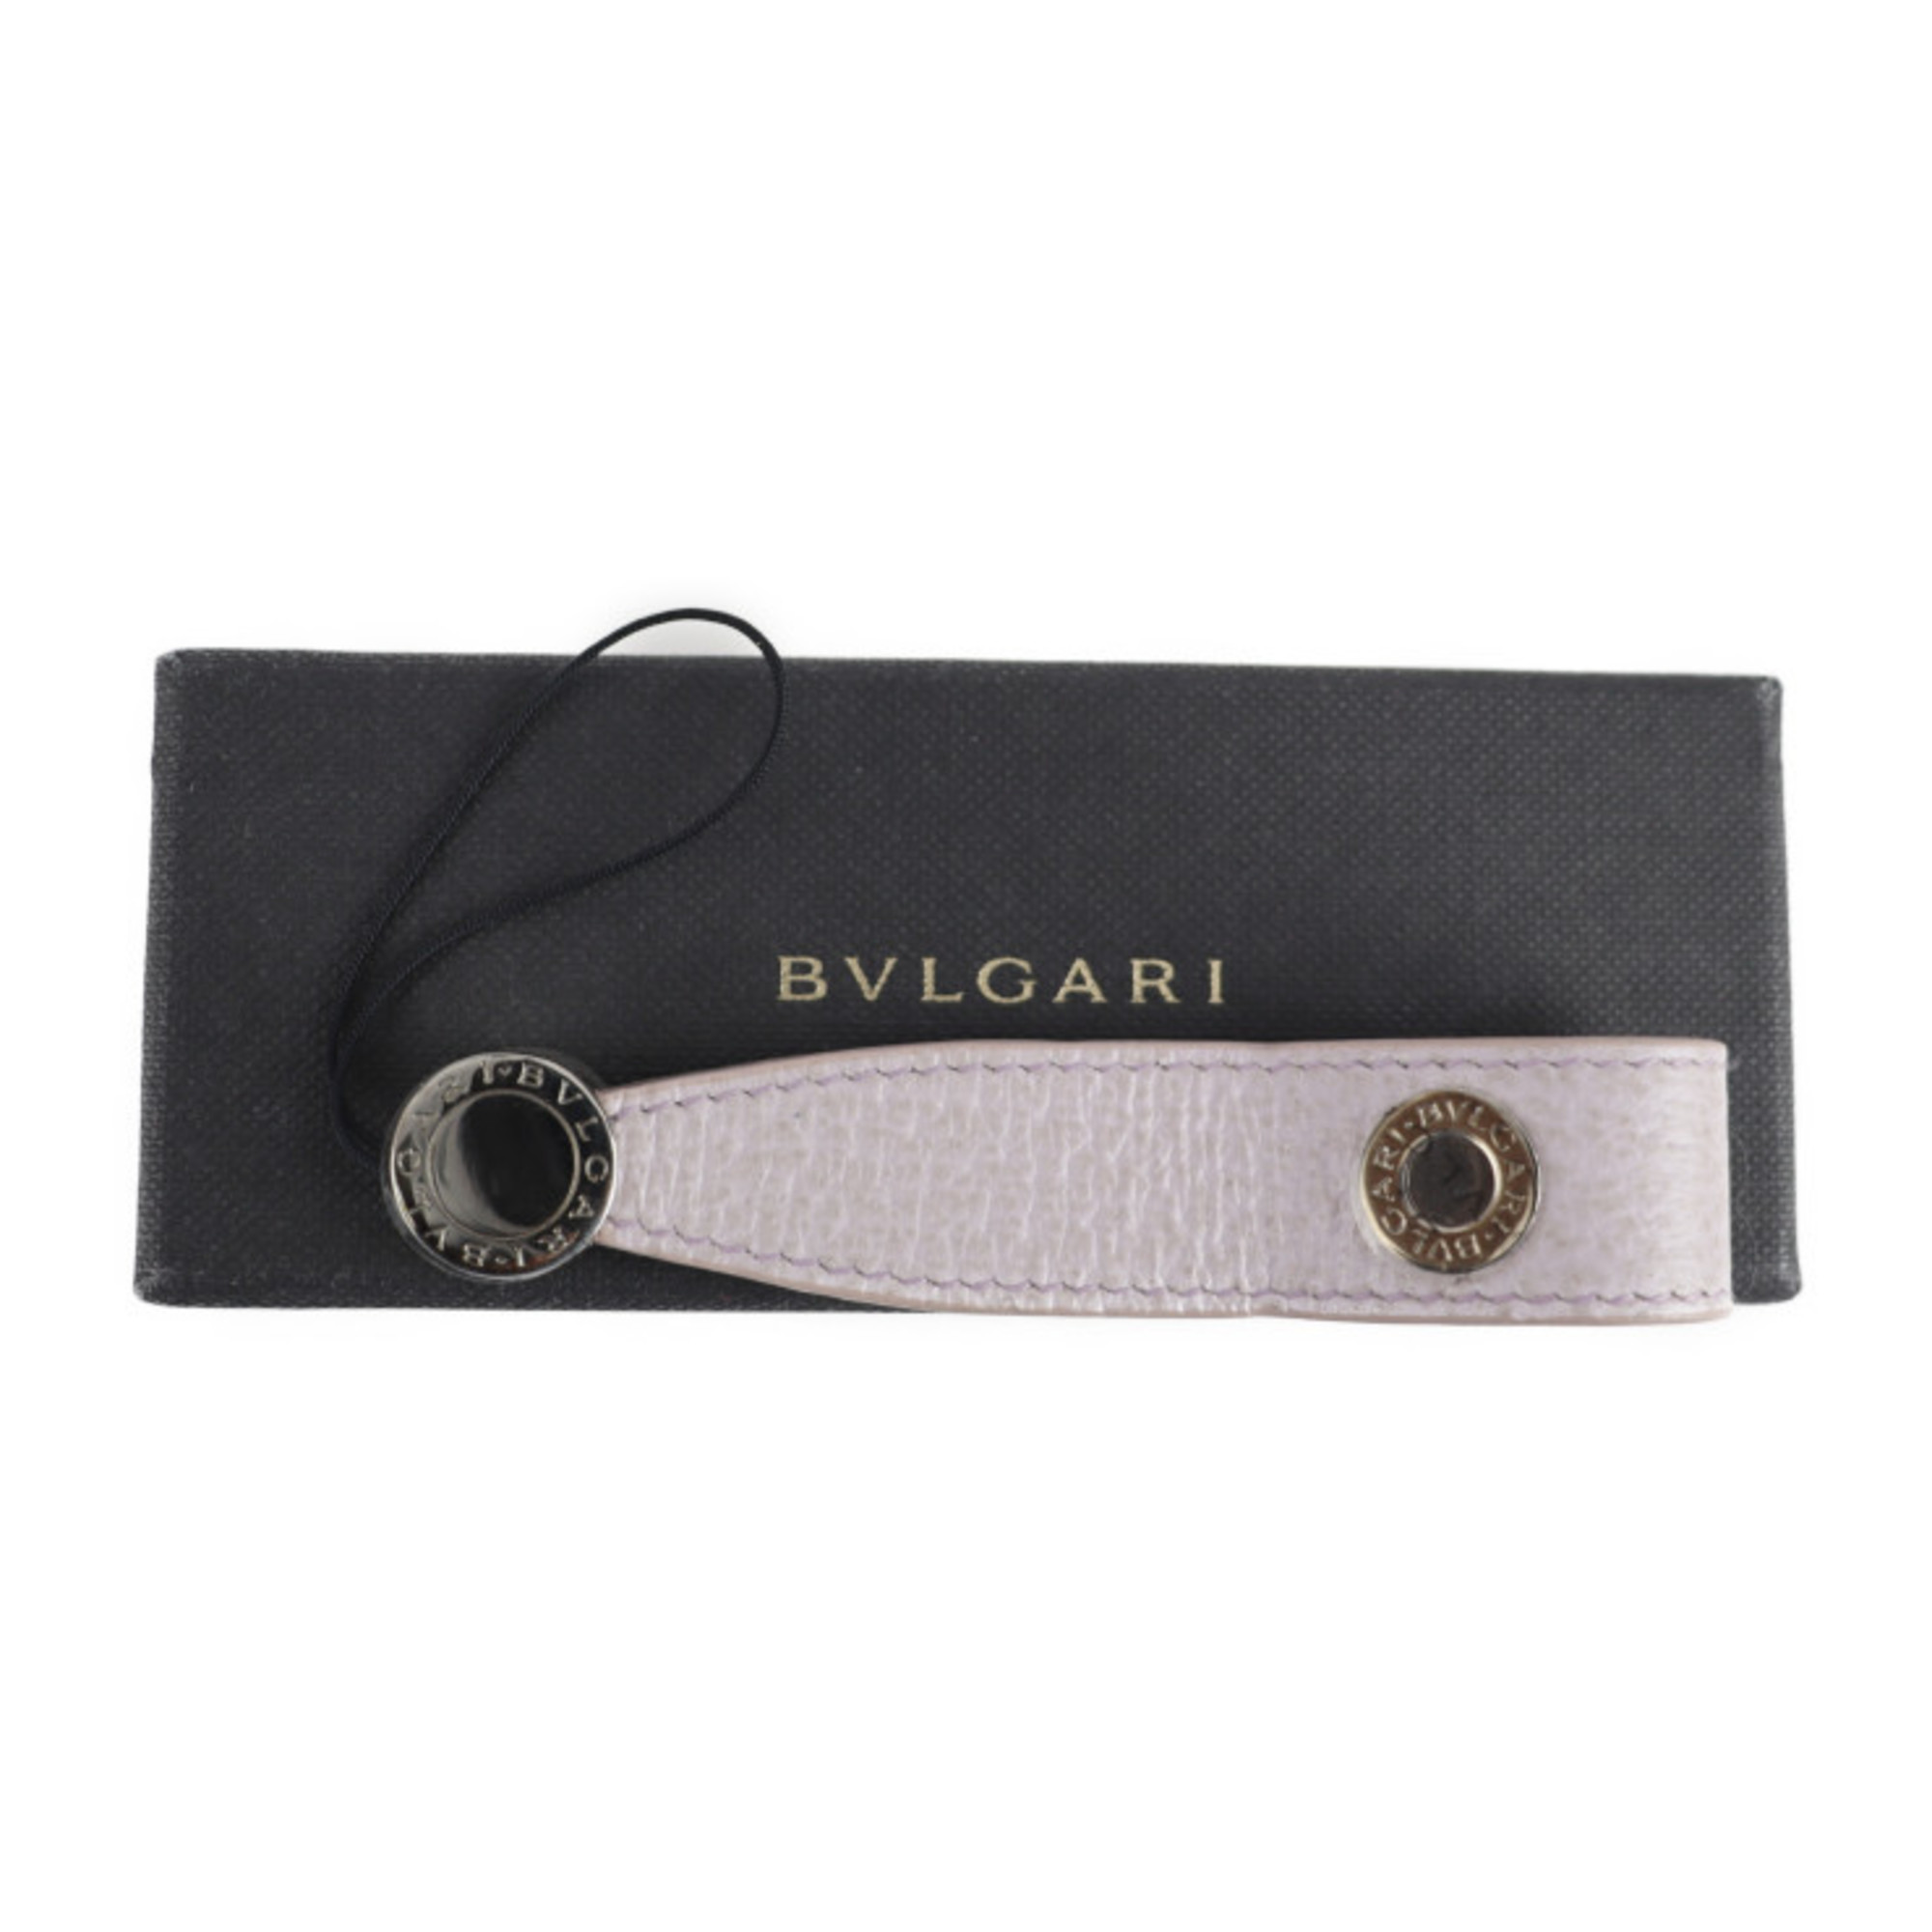 BVLGARI Bvlgari Strap Leather Metal Pink Silver Phone